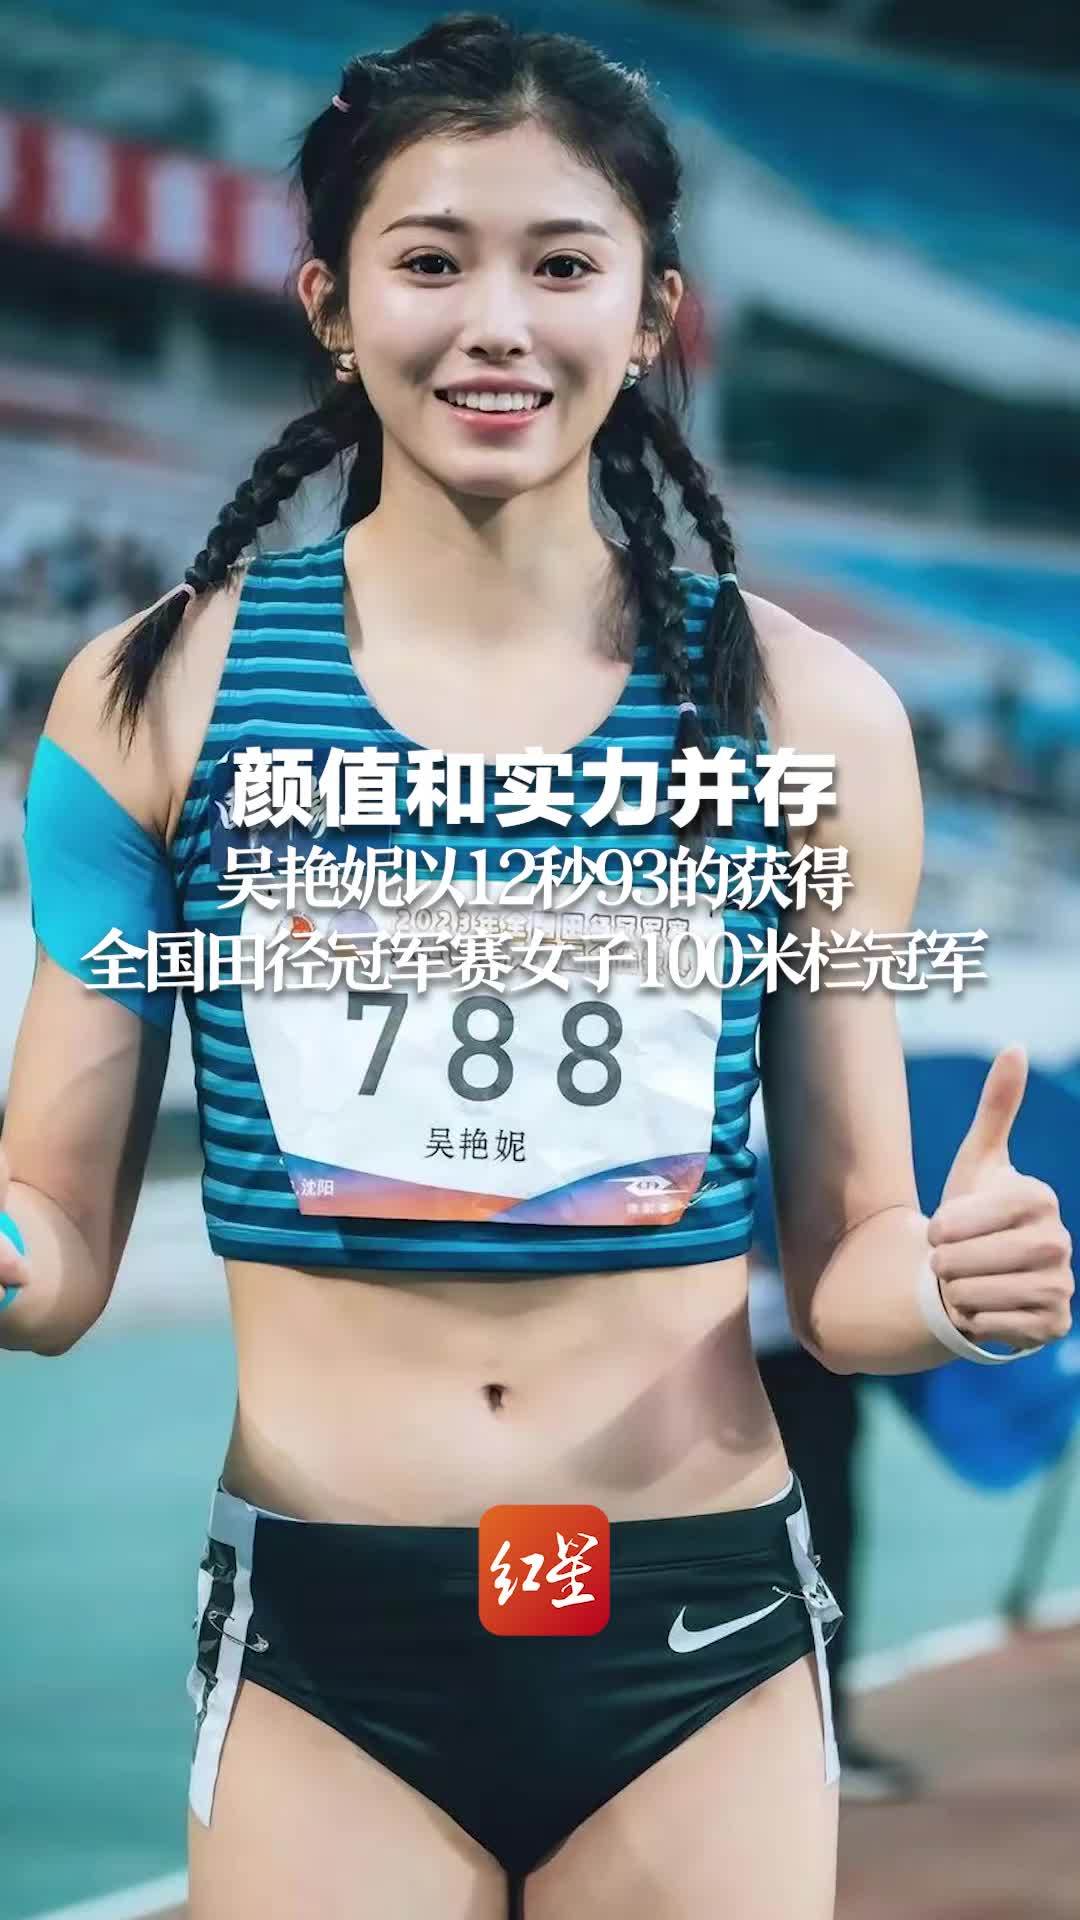 颜值与实力并存！四川小姐姐吴艳妮庆祝60米栏夺冠照片走红_北京时间